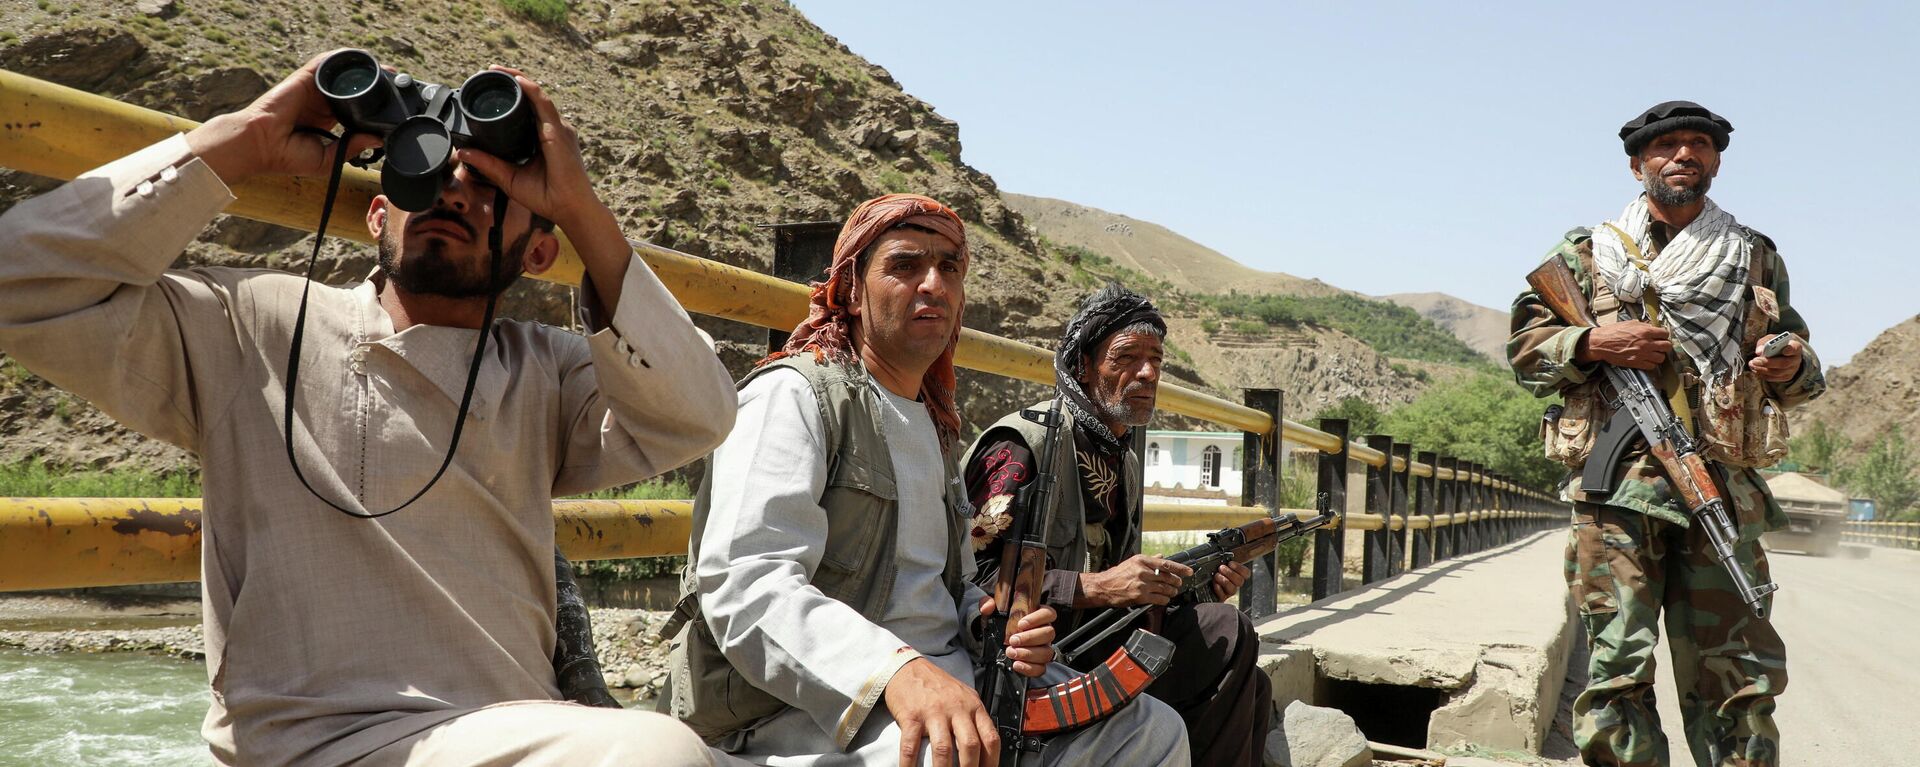 Вооруженные люди, выступающие против восстания талибов - Sputnik Таджикистан, 1920, 22.07.2021